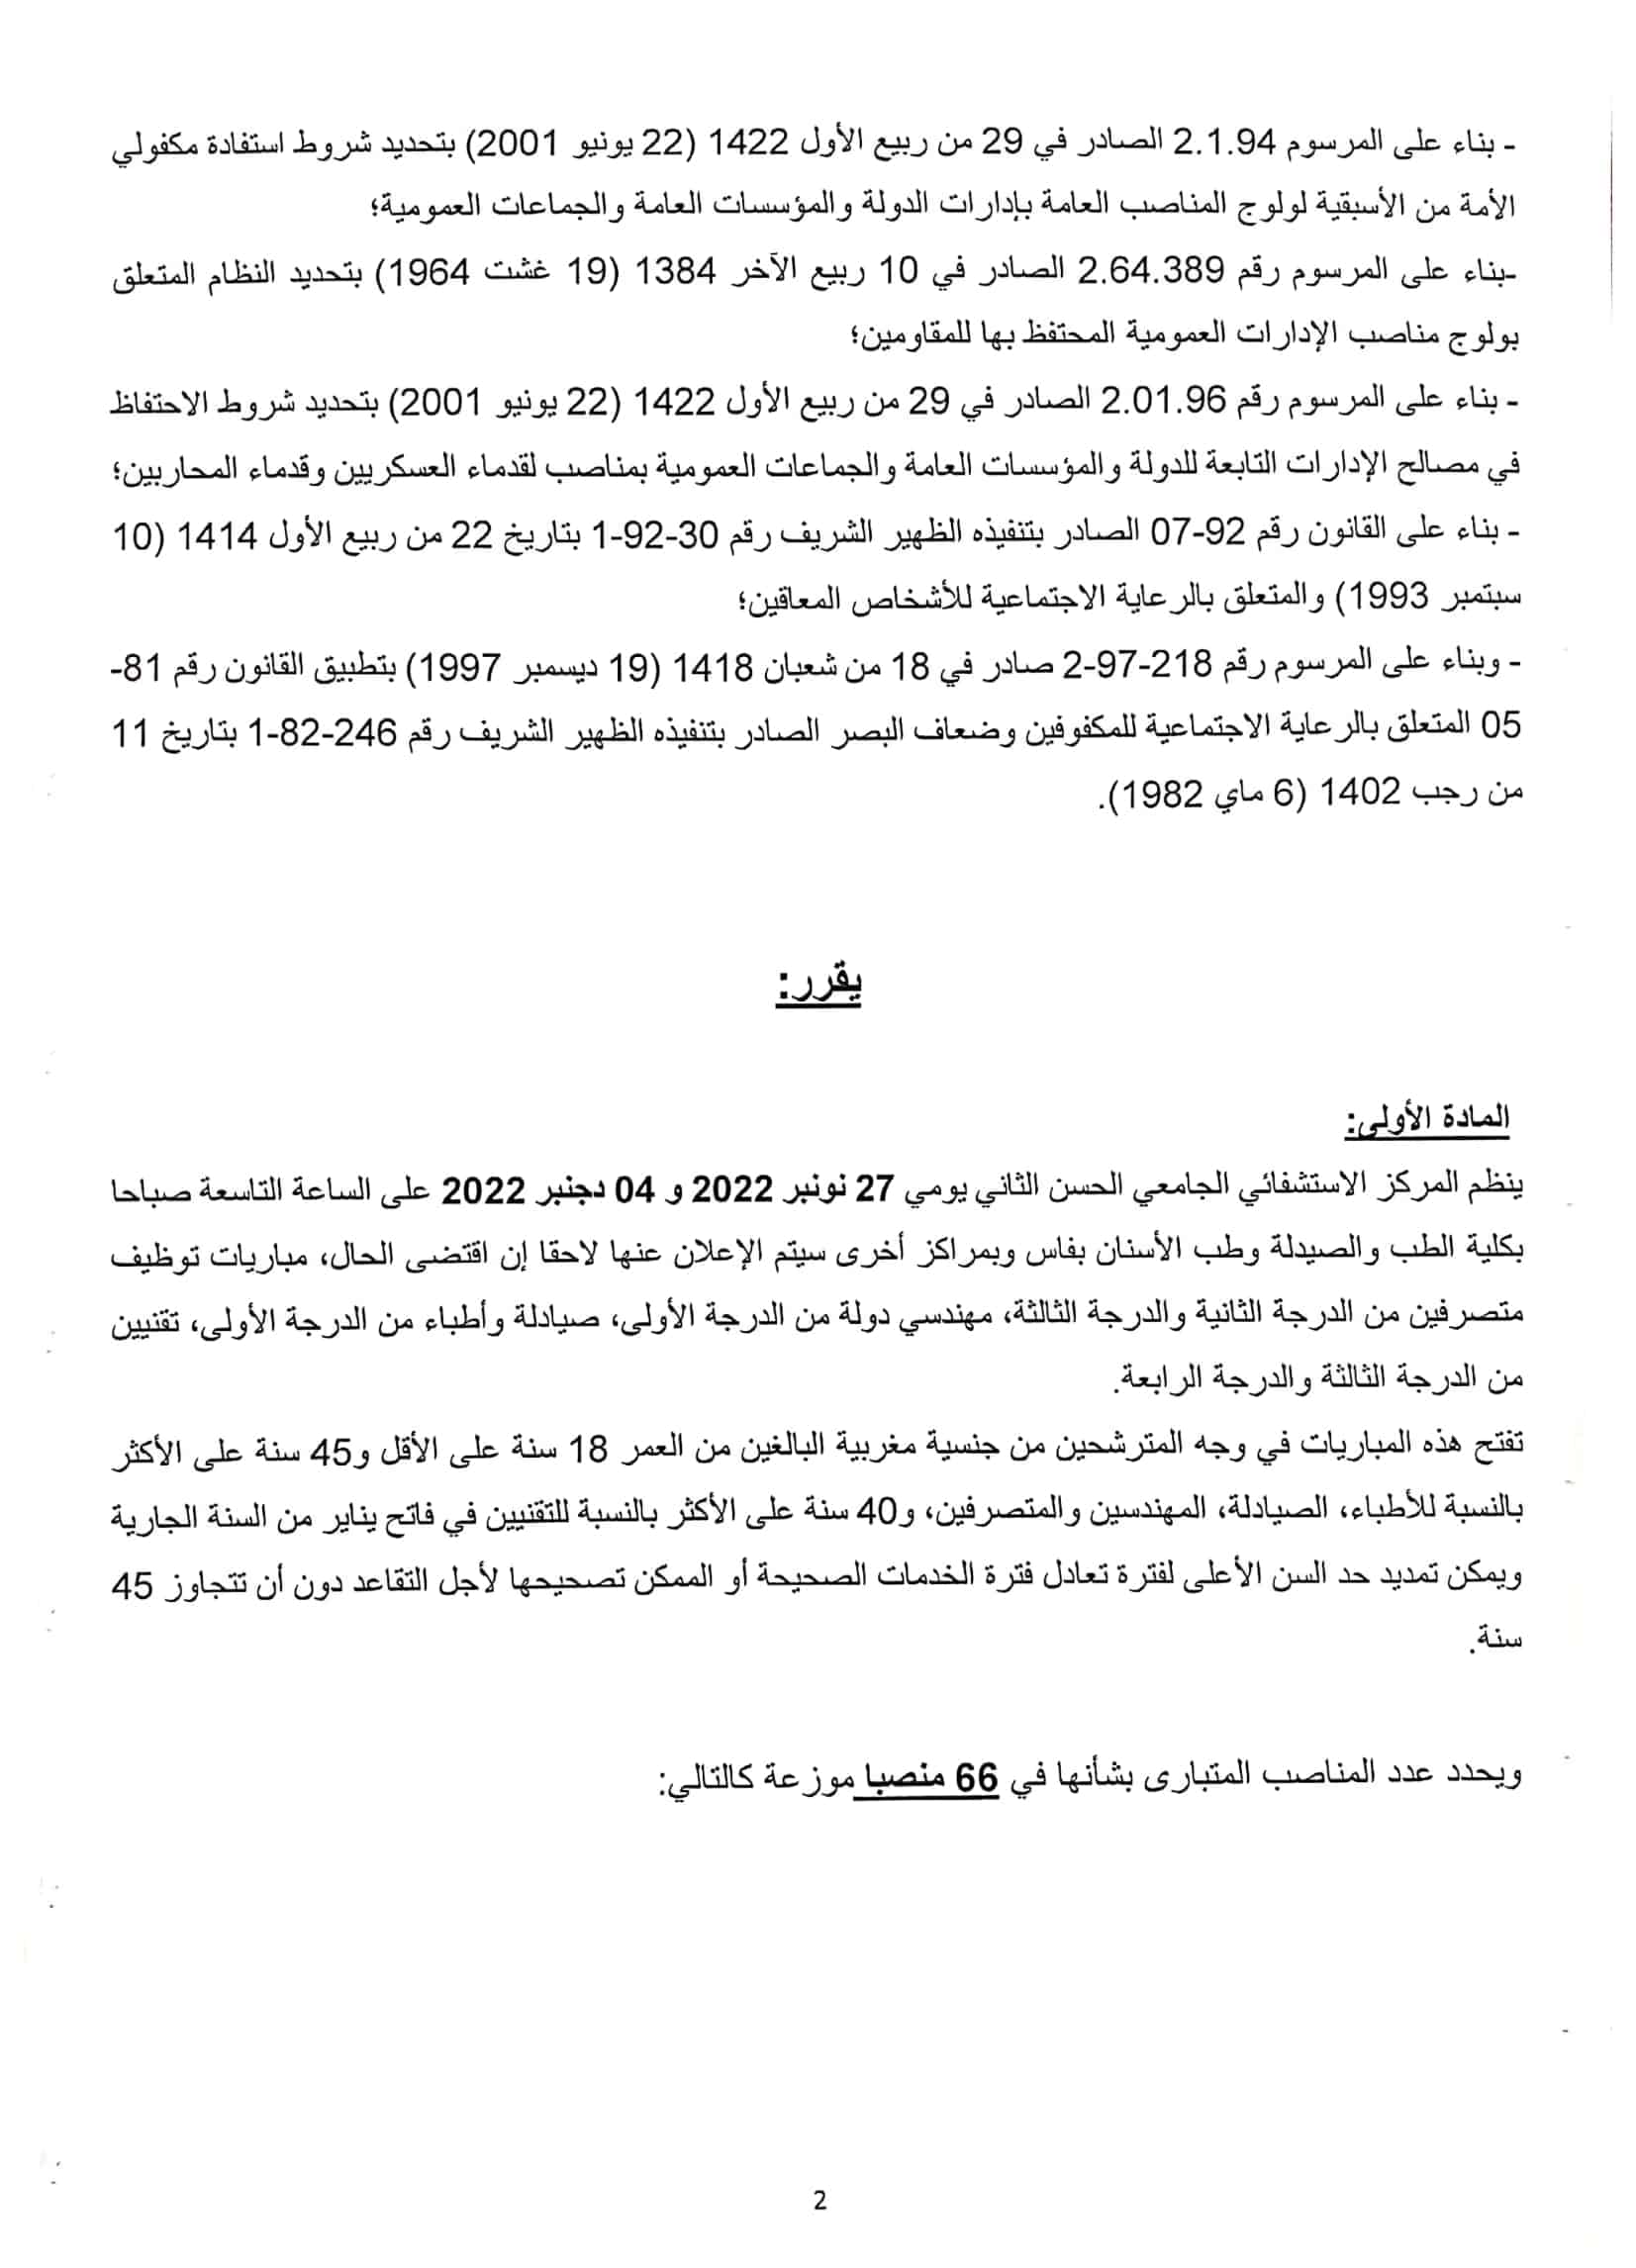 1667232335 664 Concours de Recrutement CHU Hassan II 2022 66 Postes Concours de Recrutement CHU Hassan II 2022 (66 Postes)